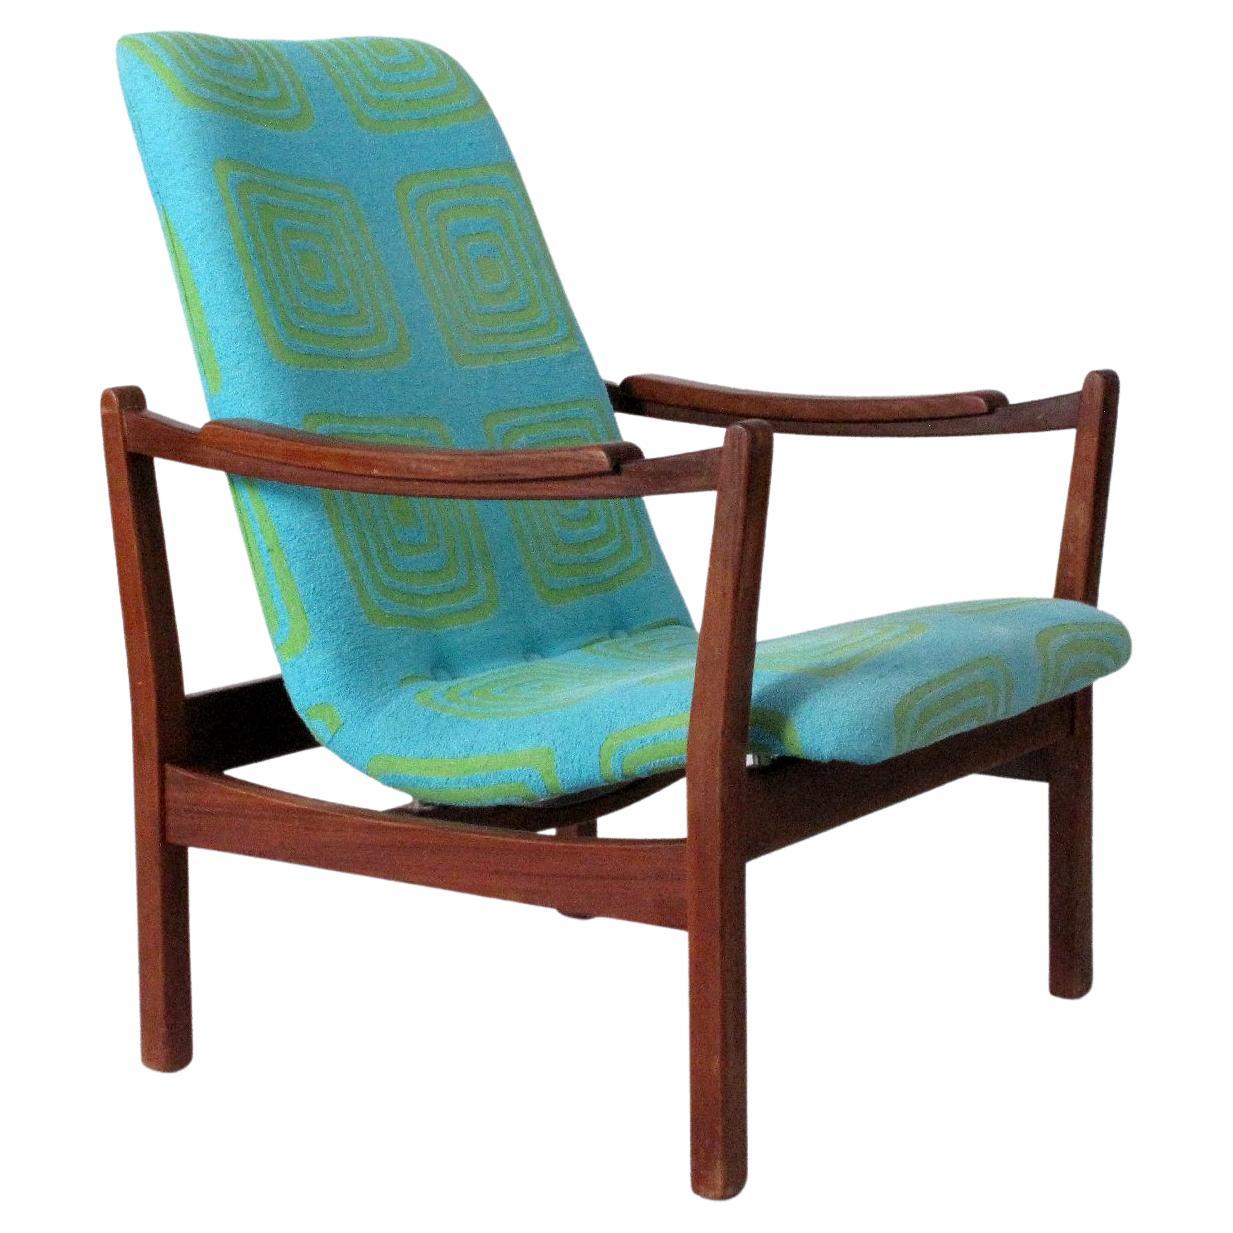 Scandinavian modern lounge chair